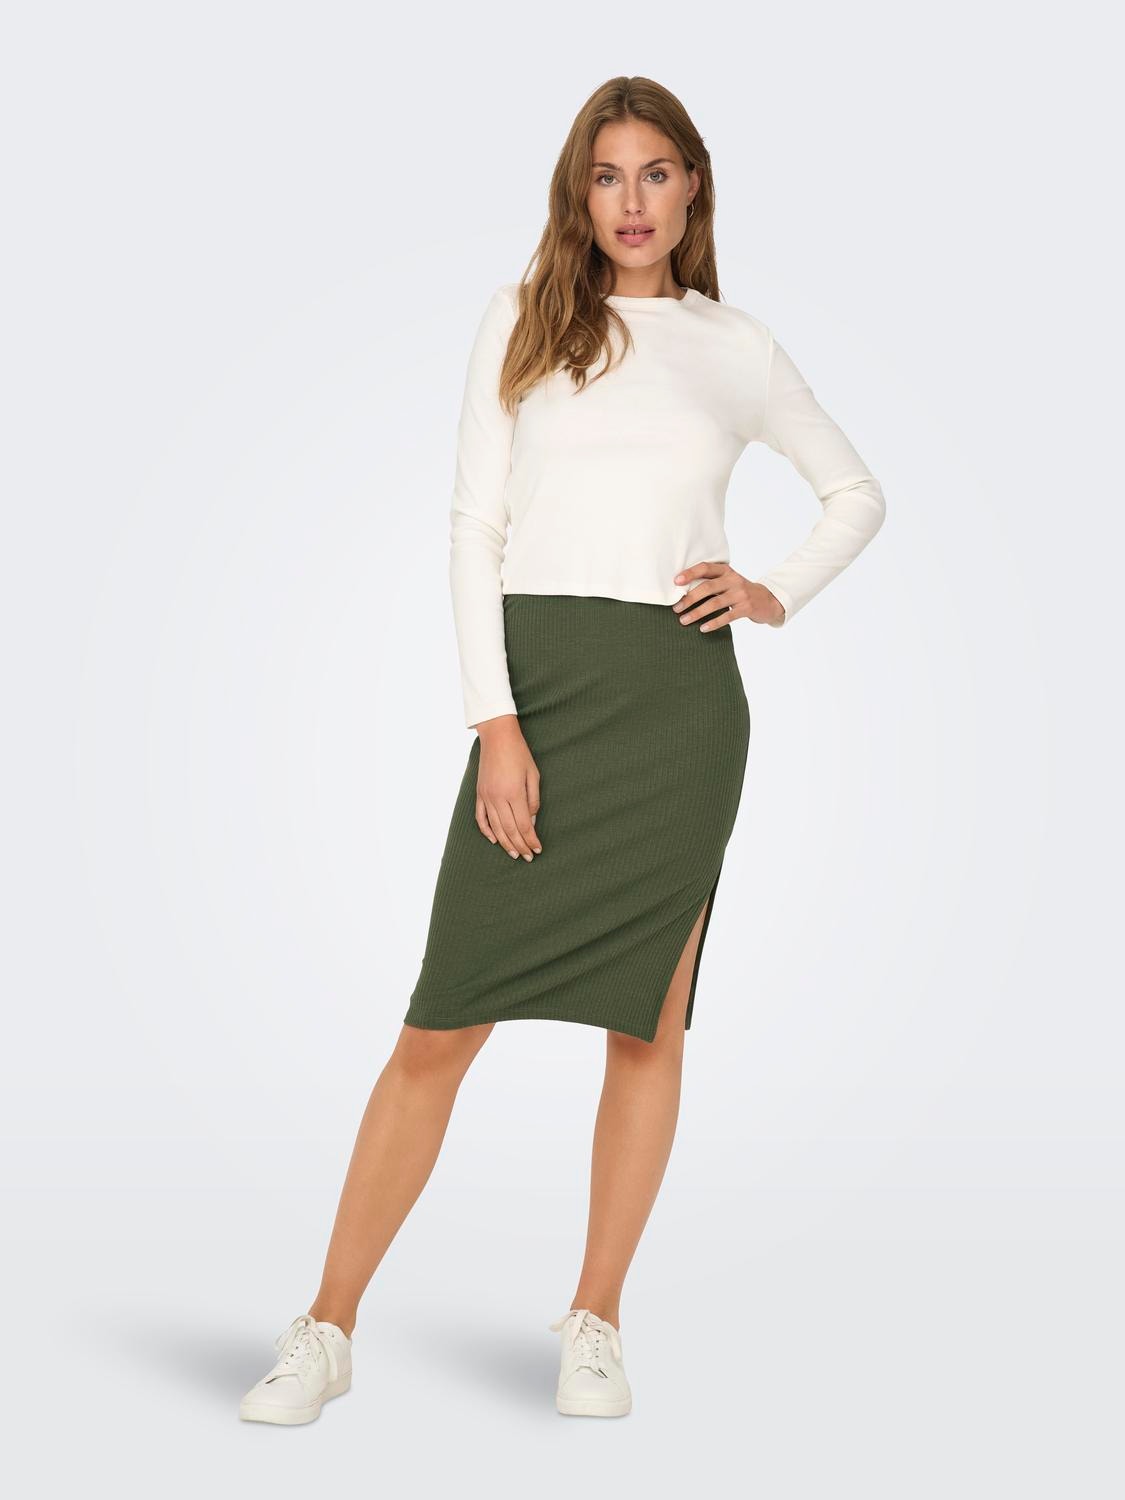 ONLY Short skirt -Grape Leaf - 15233600